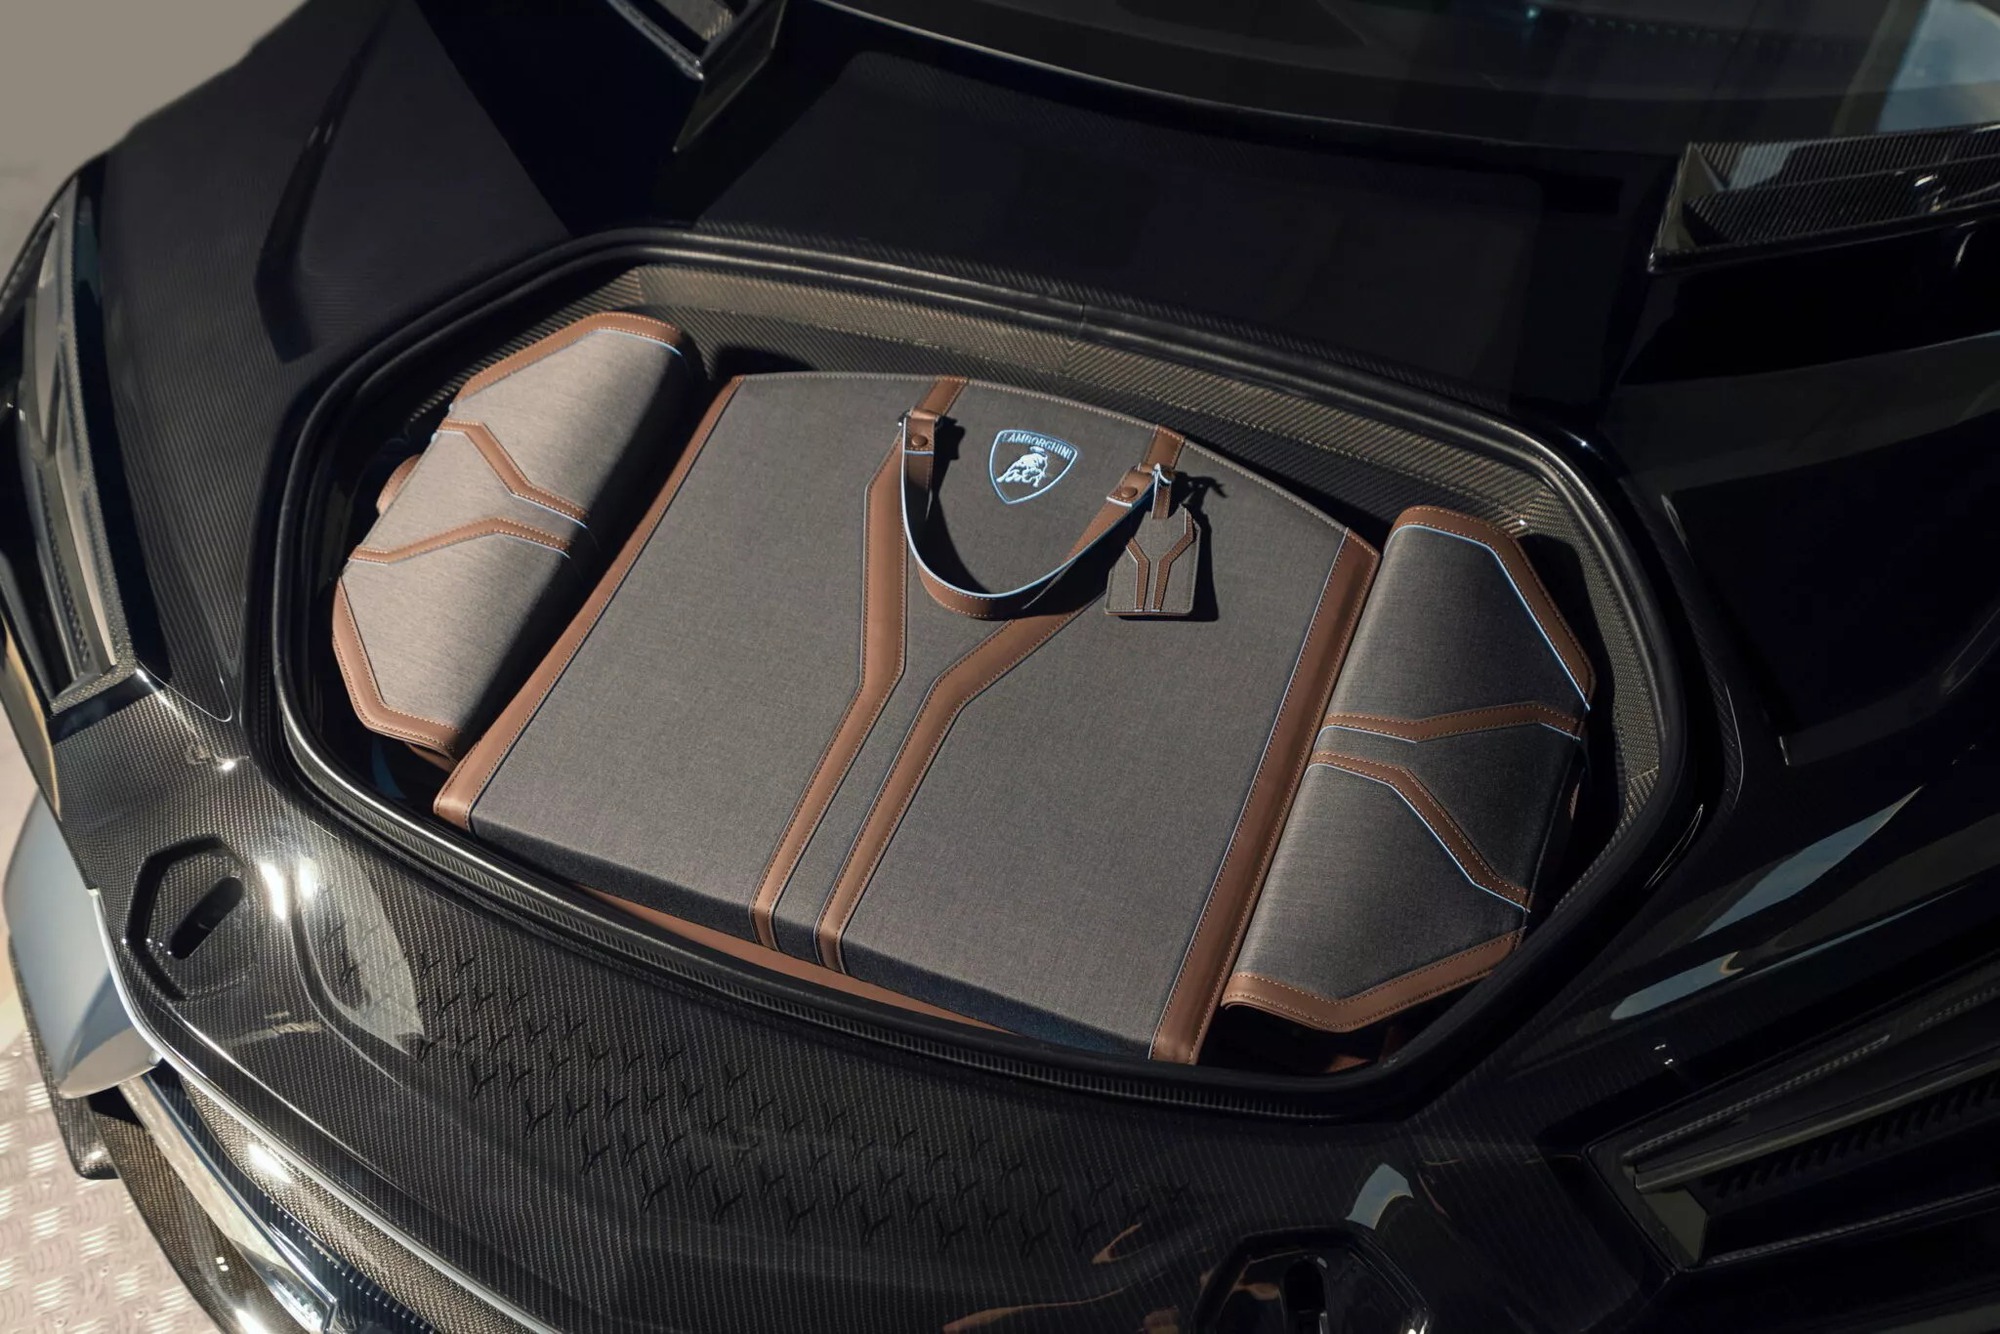 SUV thứ 2 của Lamborghini sau Urus chính thức chào sân, sẽ là xe điện đầu tiên của hãng - Ảnh 3.